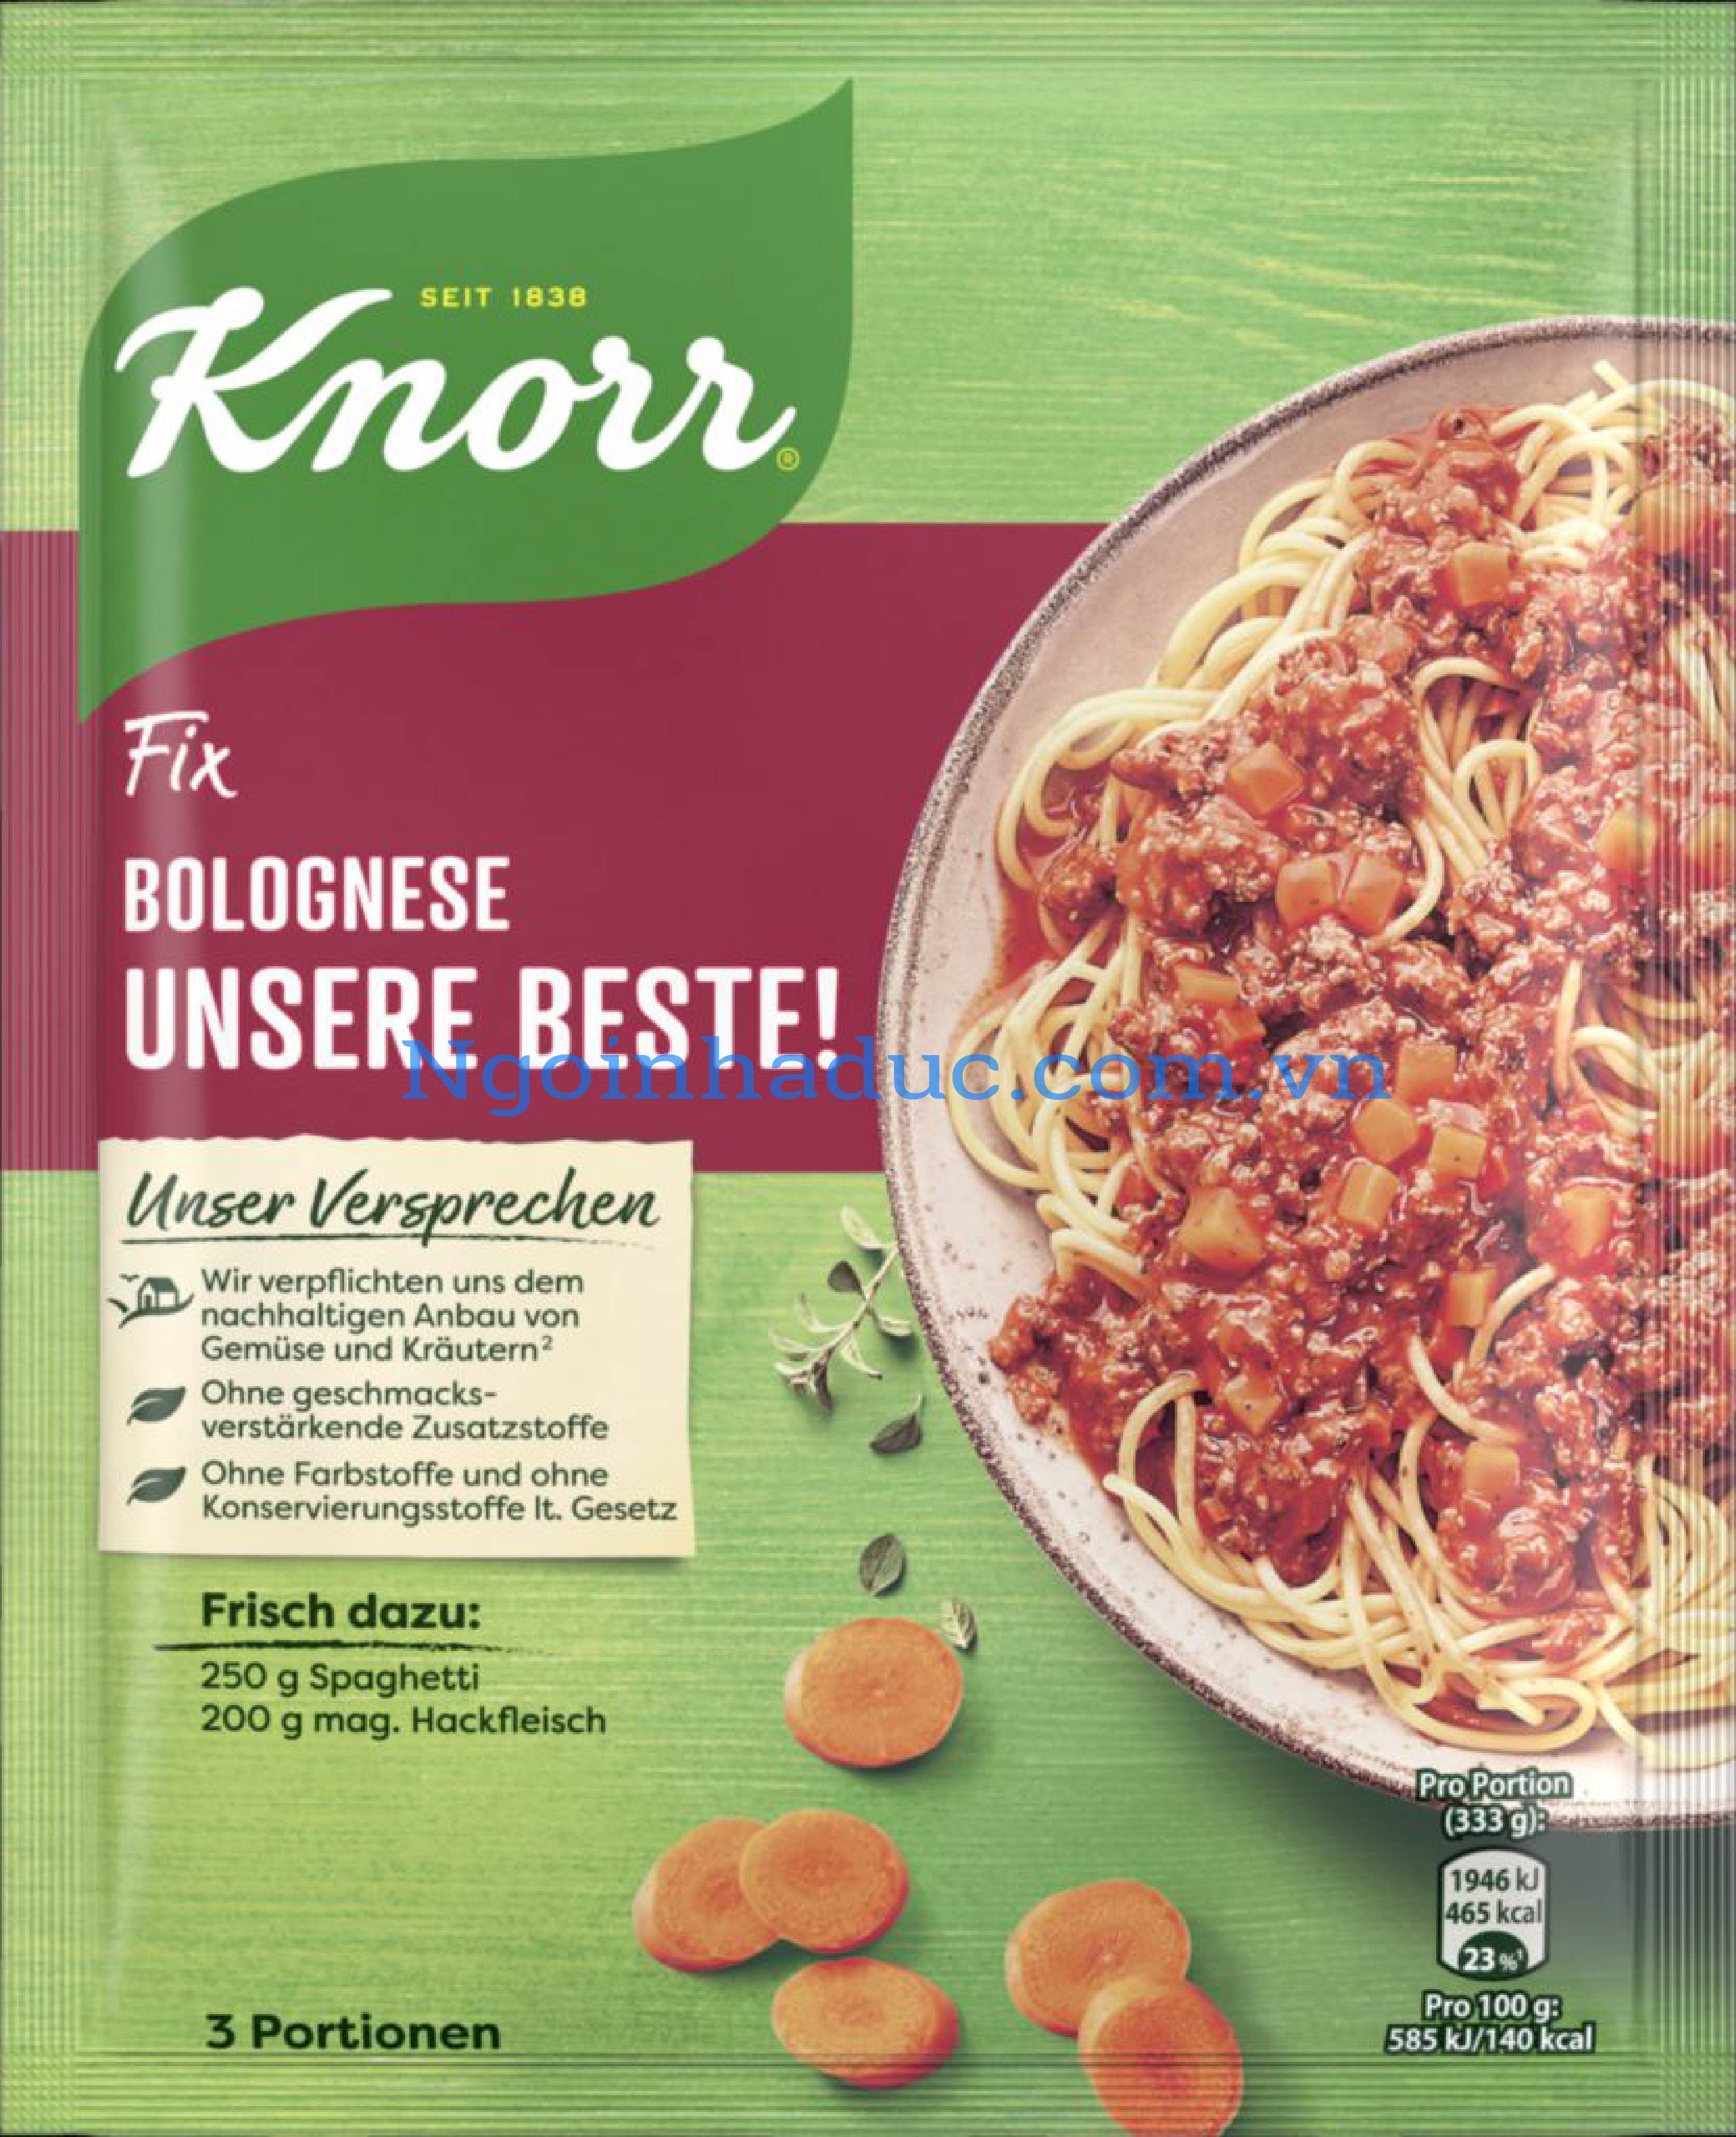 Sốt mỳ Ý Knorr